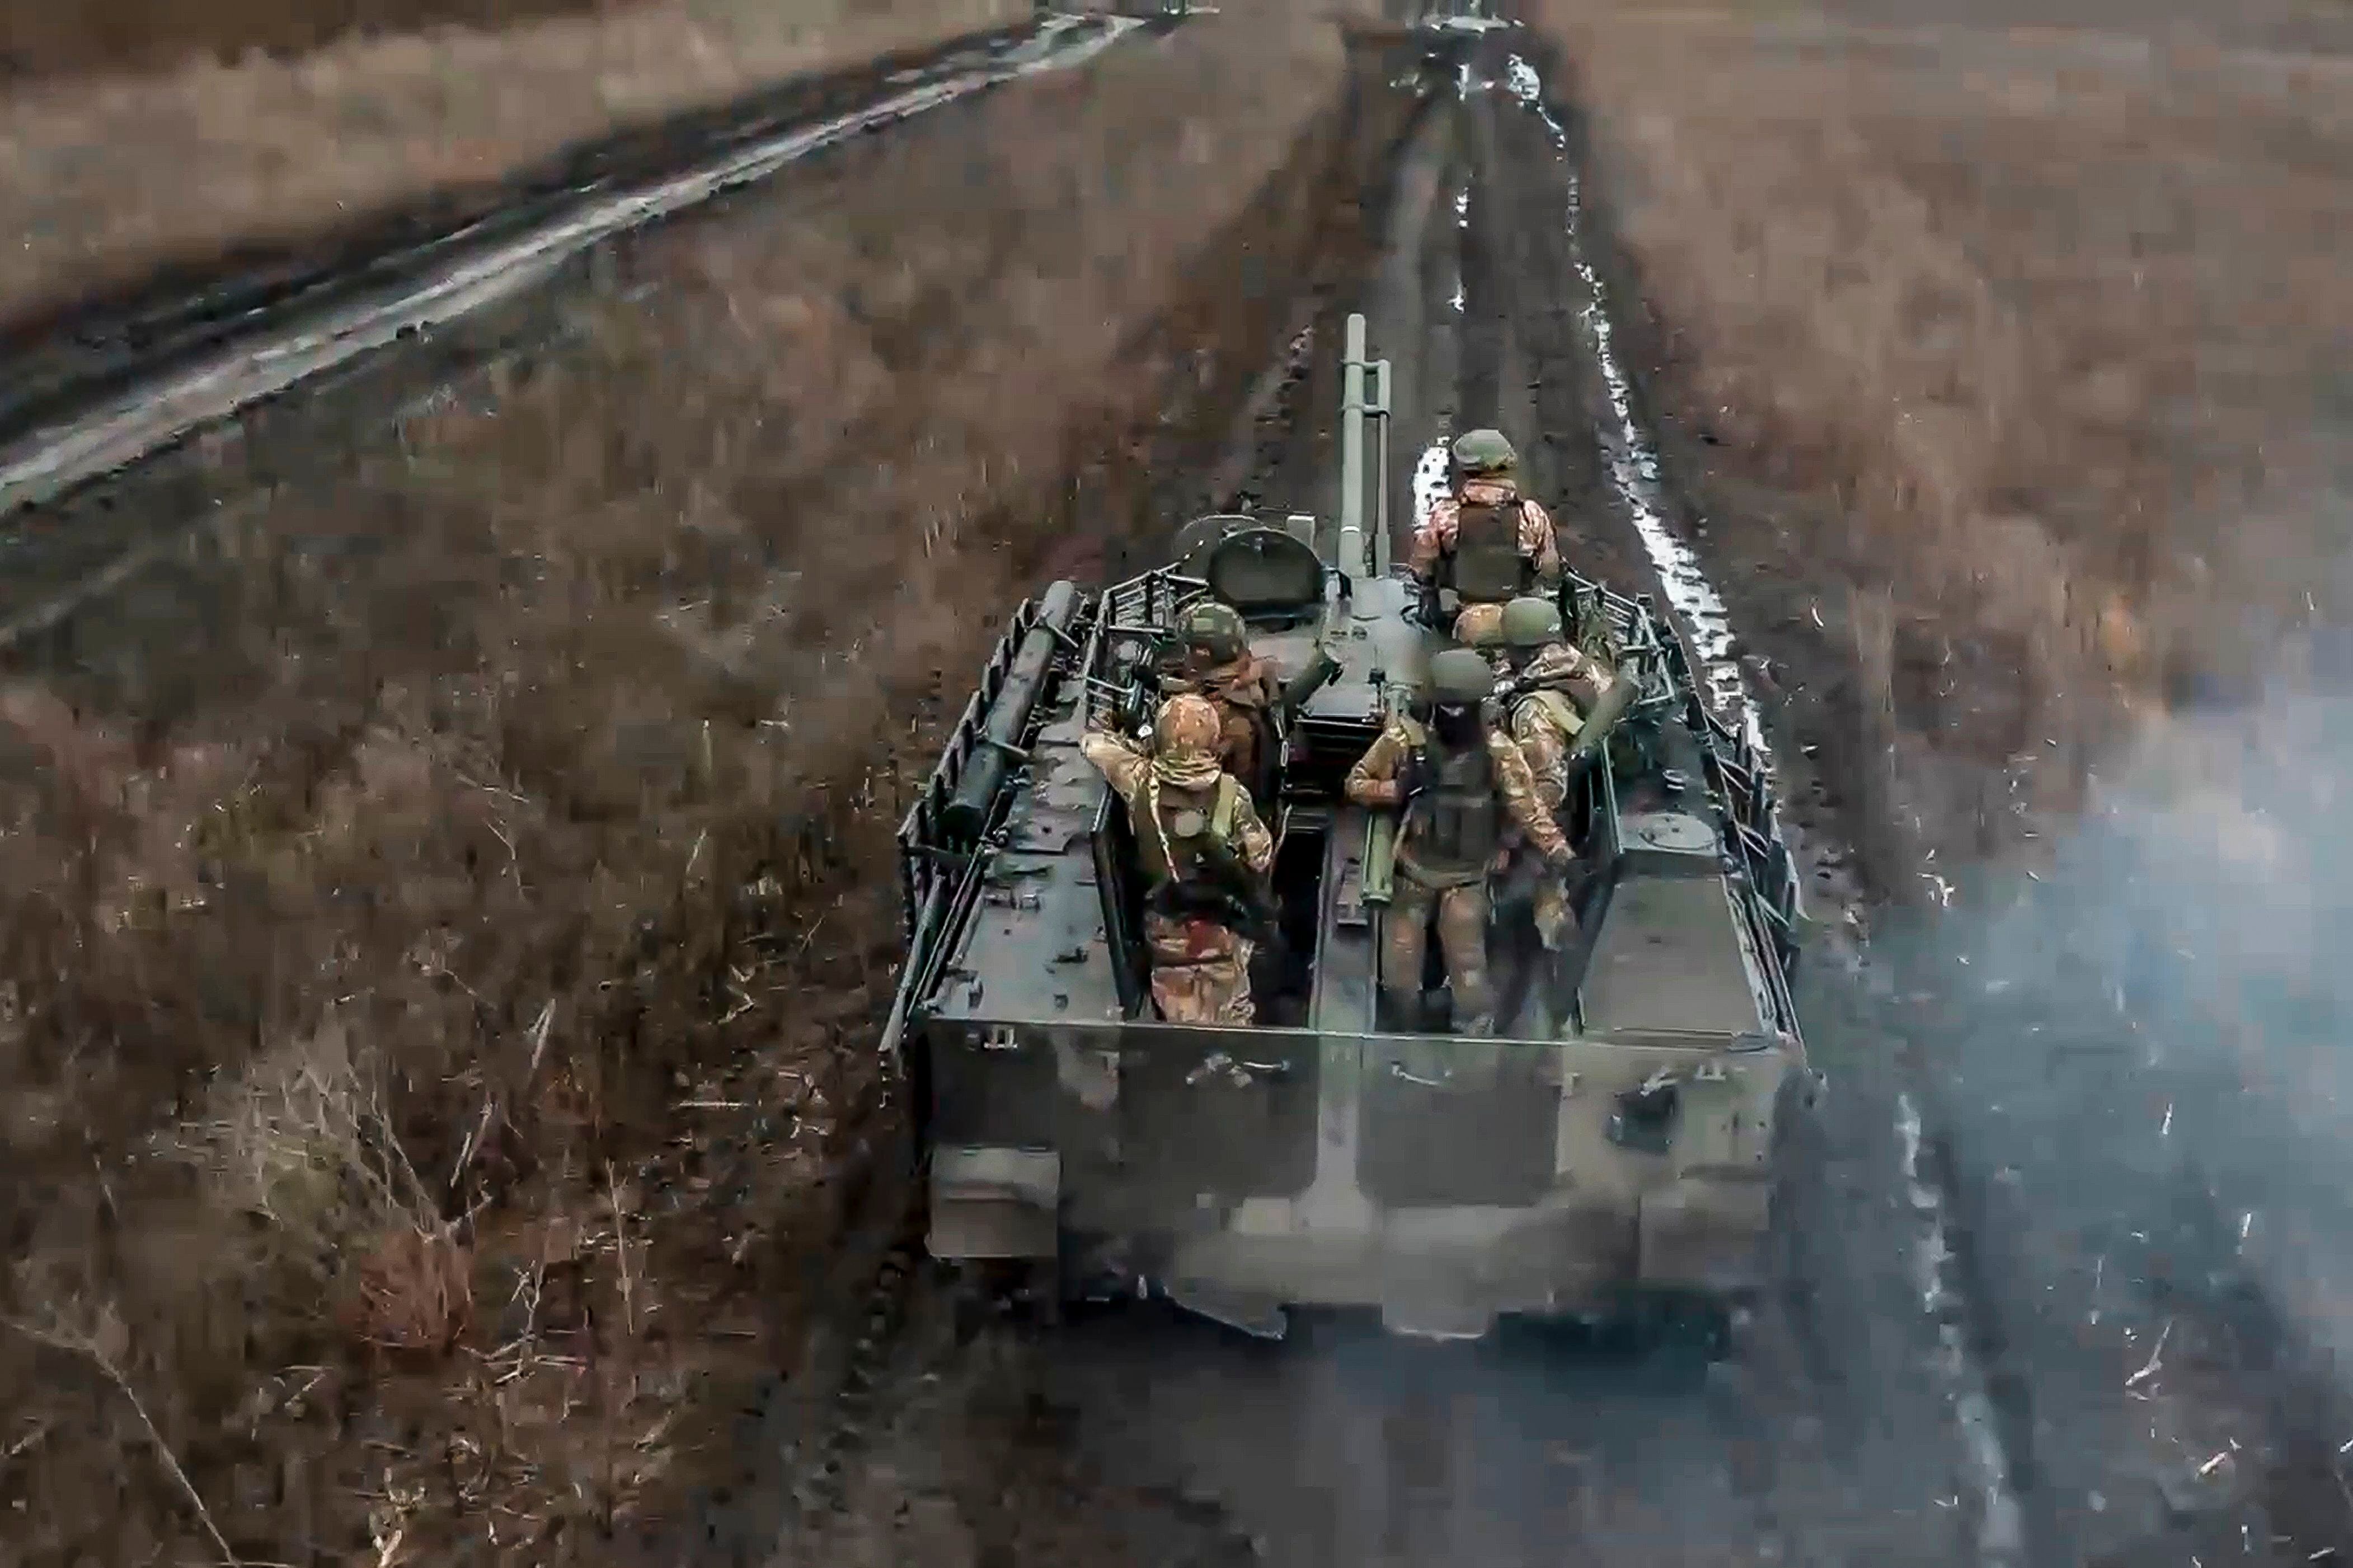 Soldados rusos avanzan en un vehículo blindado para tomar posiciones y disparar contra posiciones ucranianas, en un lugar no identificado de Ucrania. (Servicio de prensa del Ministerio de Defensa de Rusia vía AP)